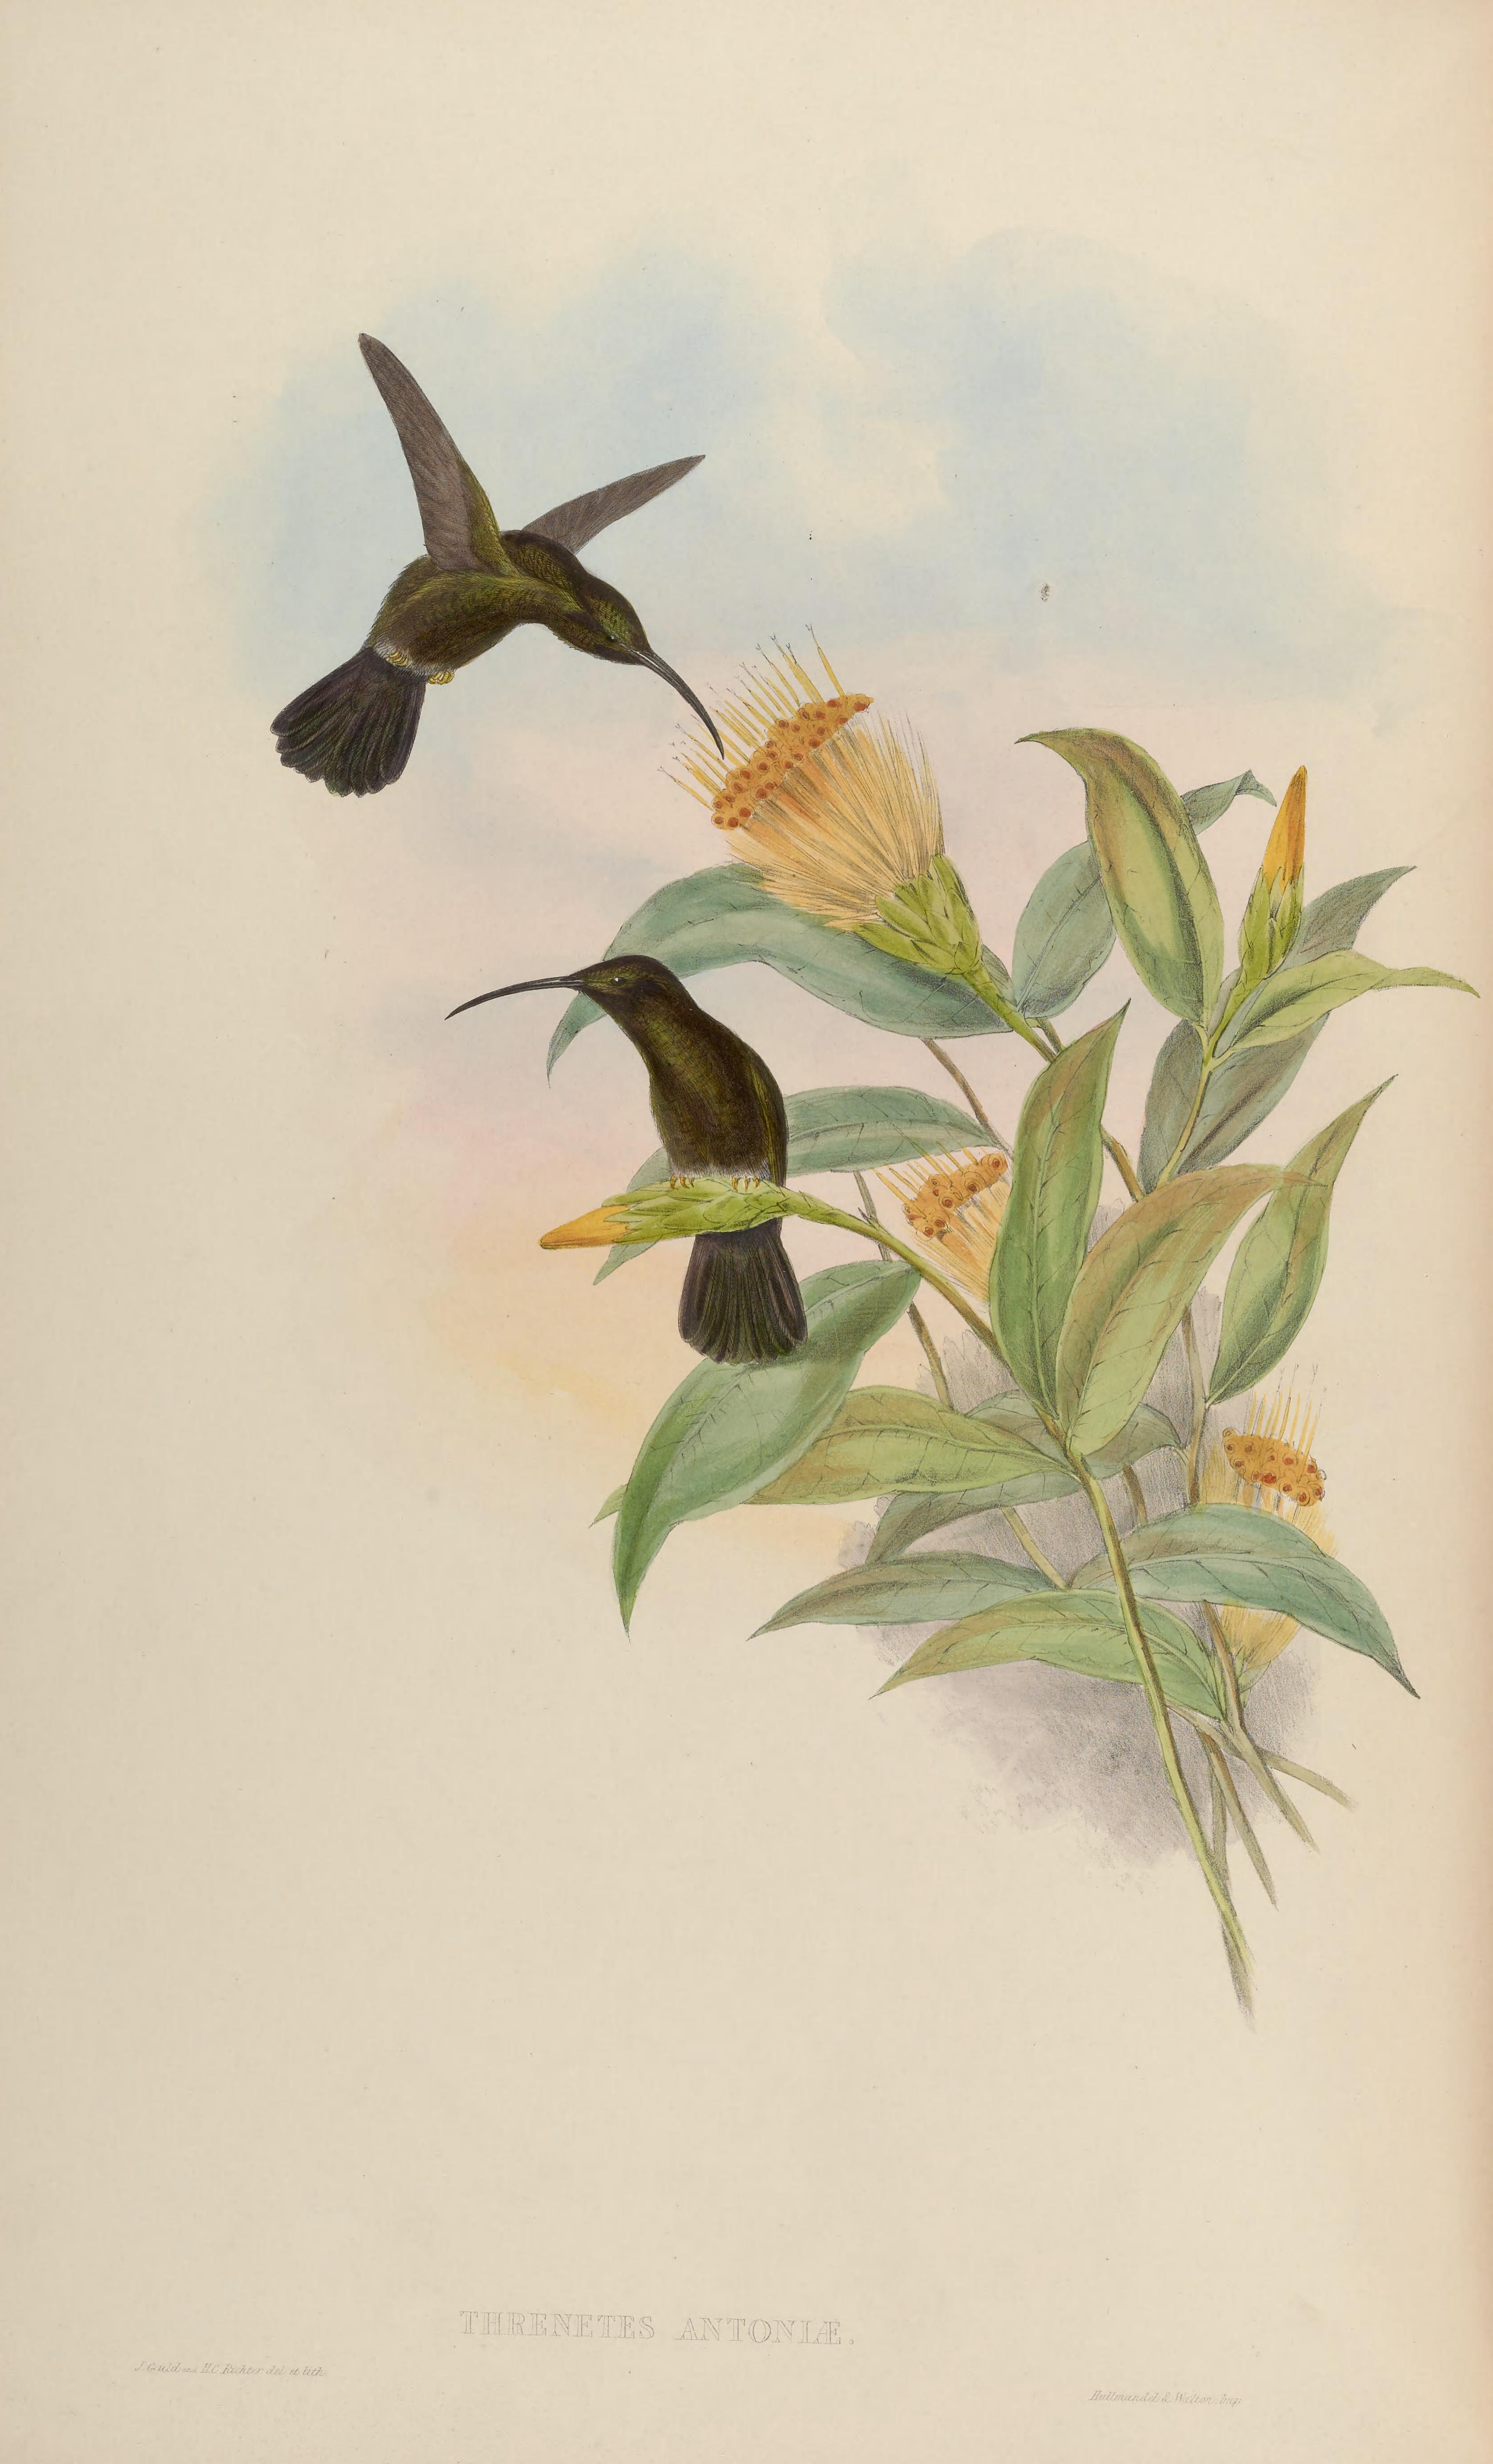 Threnetes niger, (Linnaeus, 1758) - Ermite d'Antonia | Sandre 